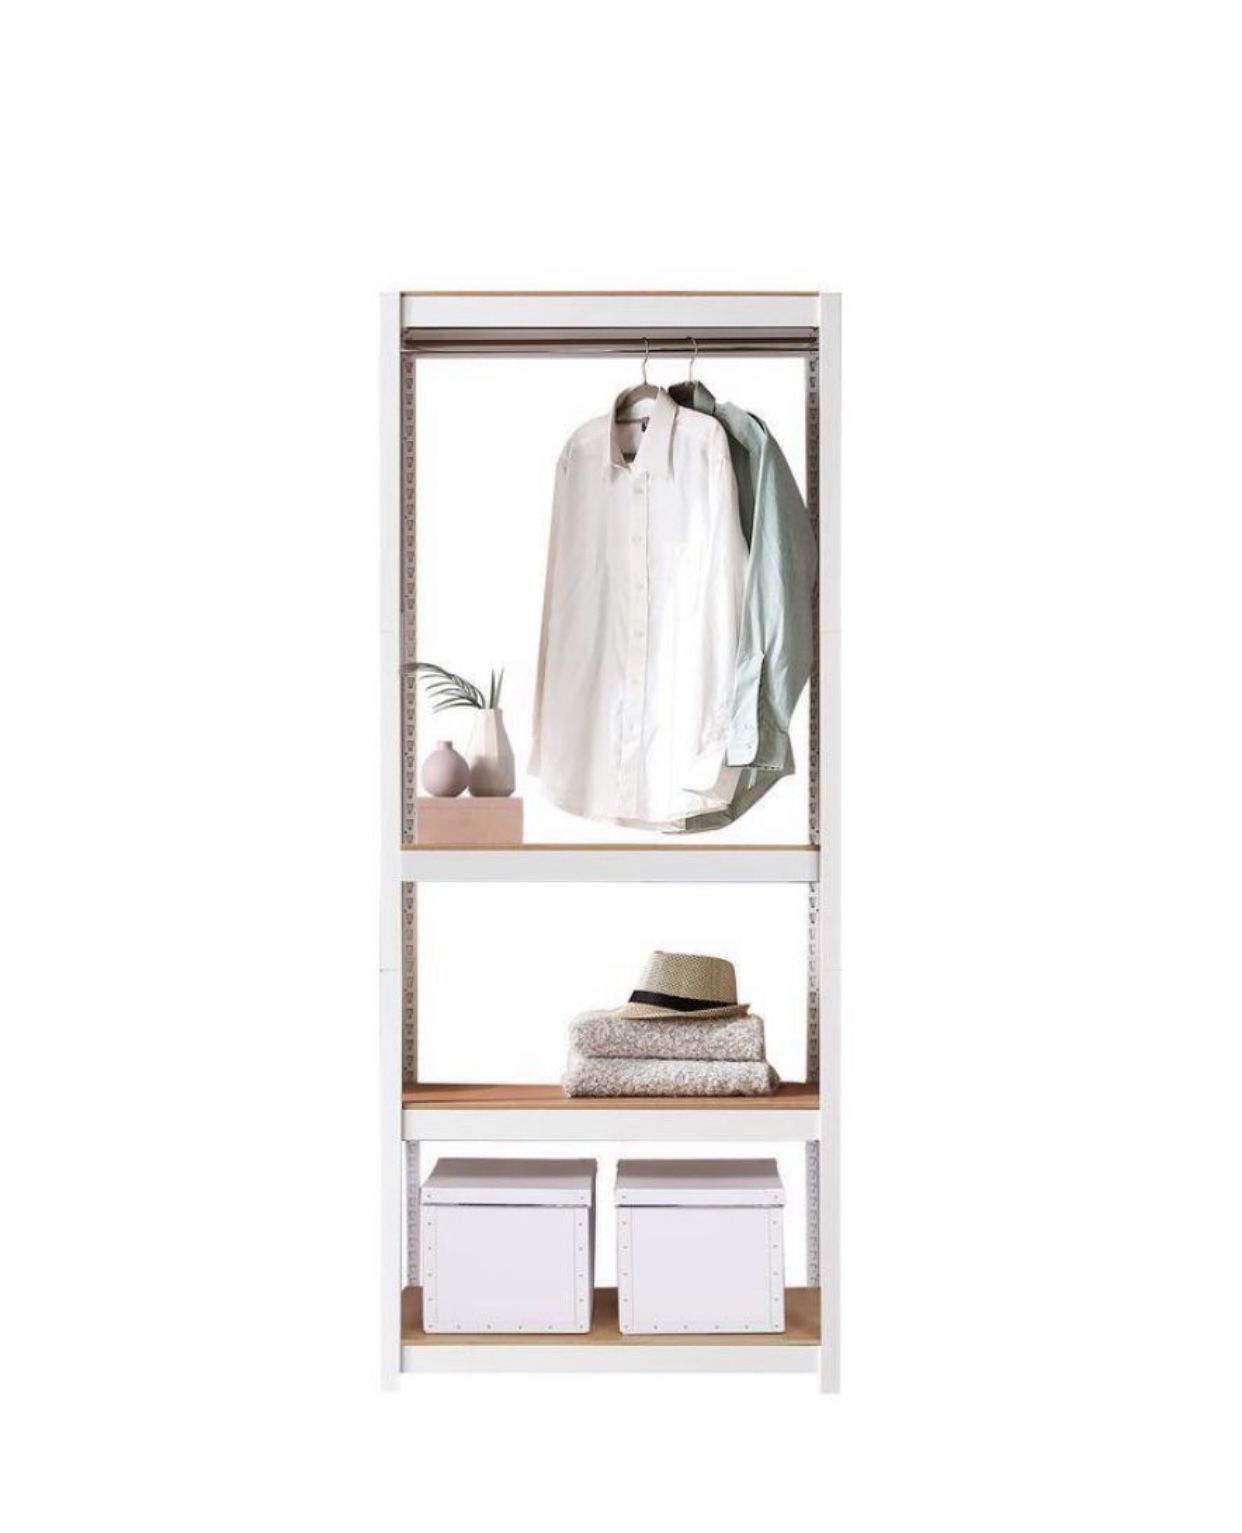 Kepsuul Closet Organizer White Clothing Rack Clothing Shelving New In Box 